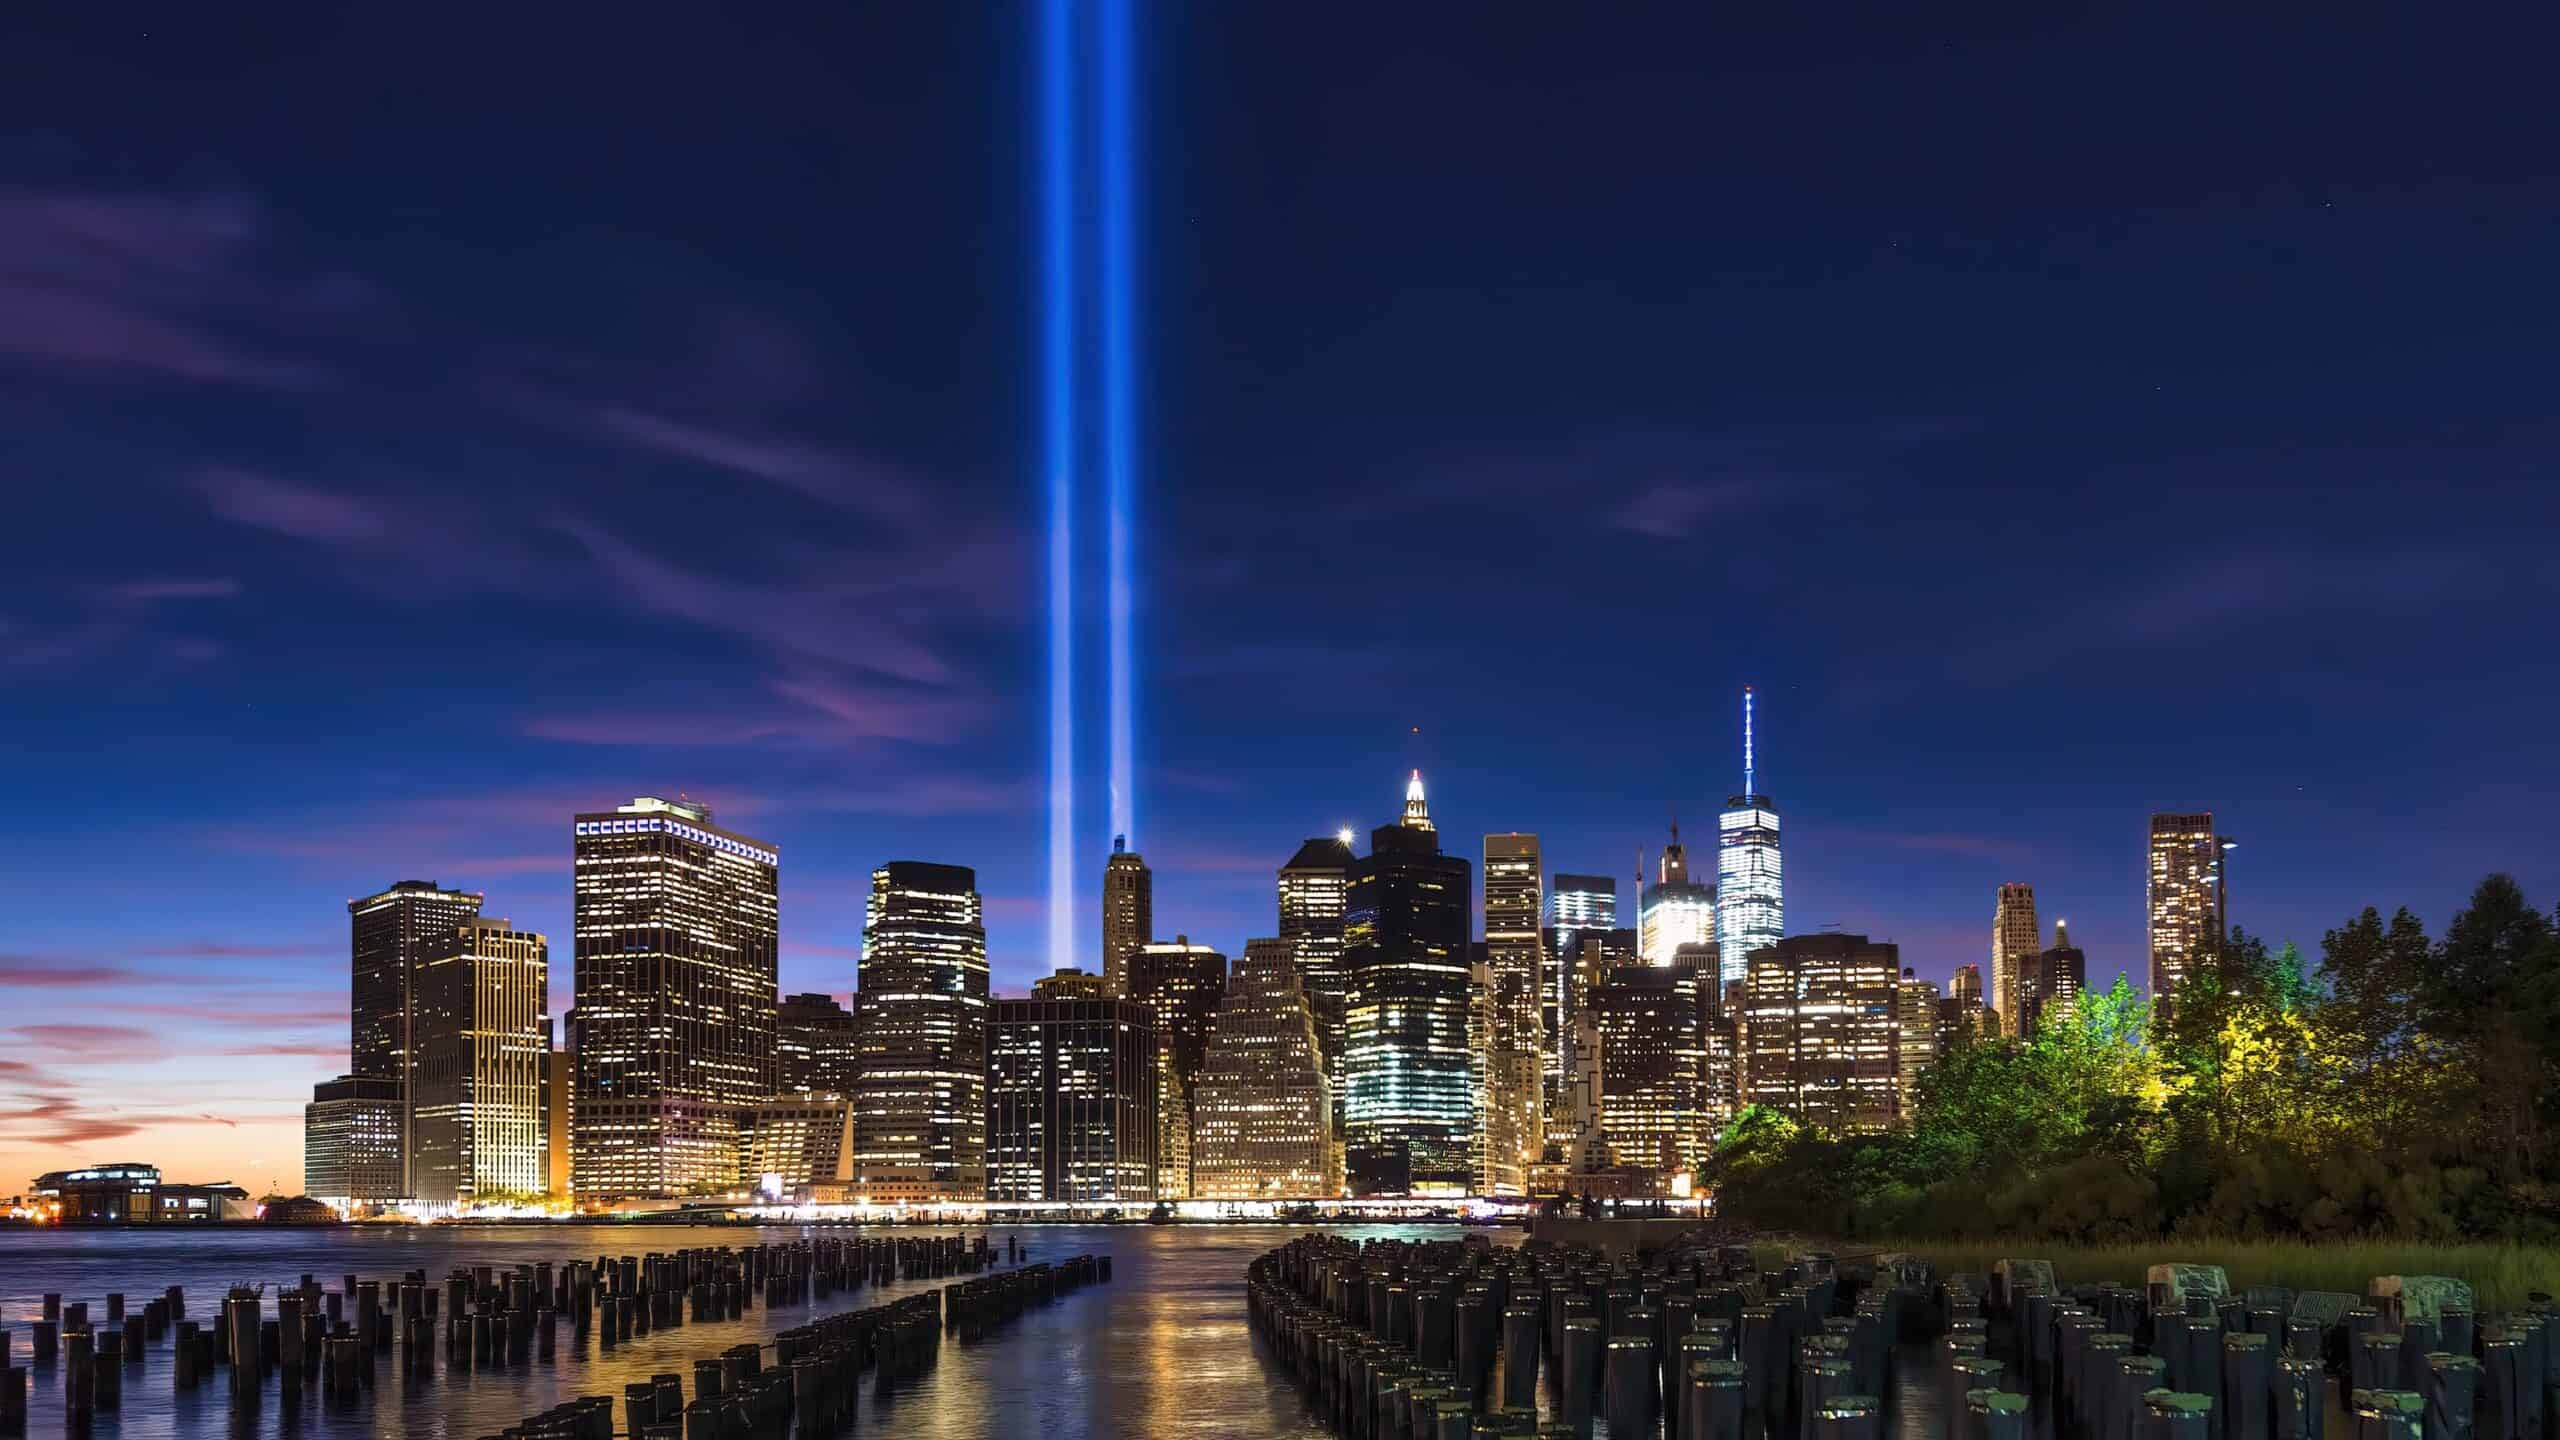 911 Tribute at Ground Zero